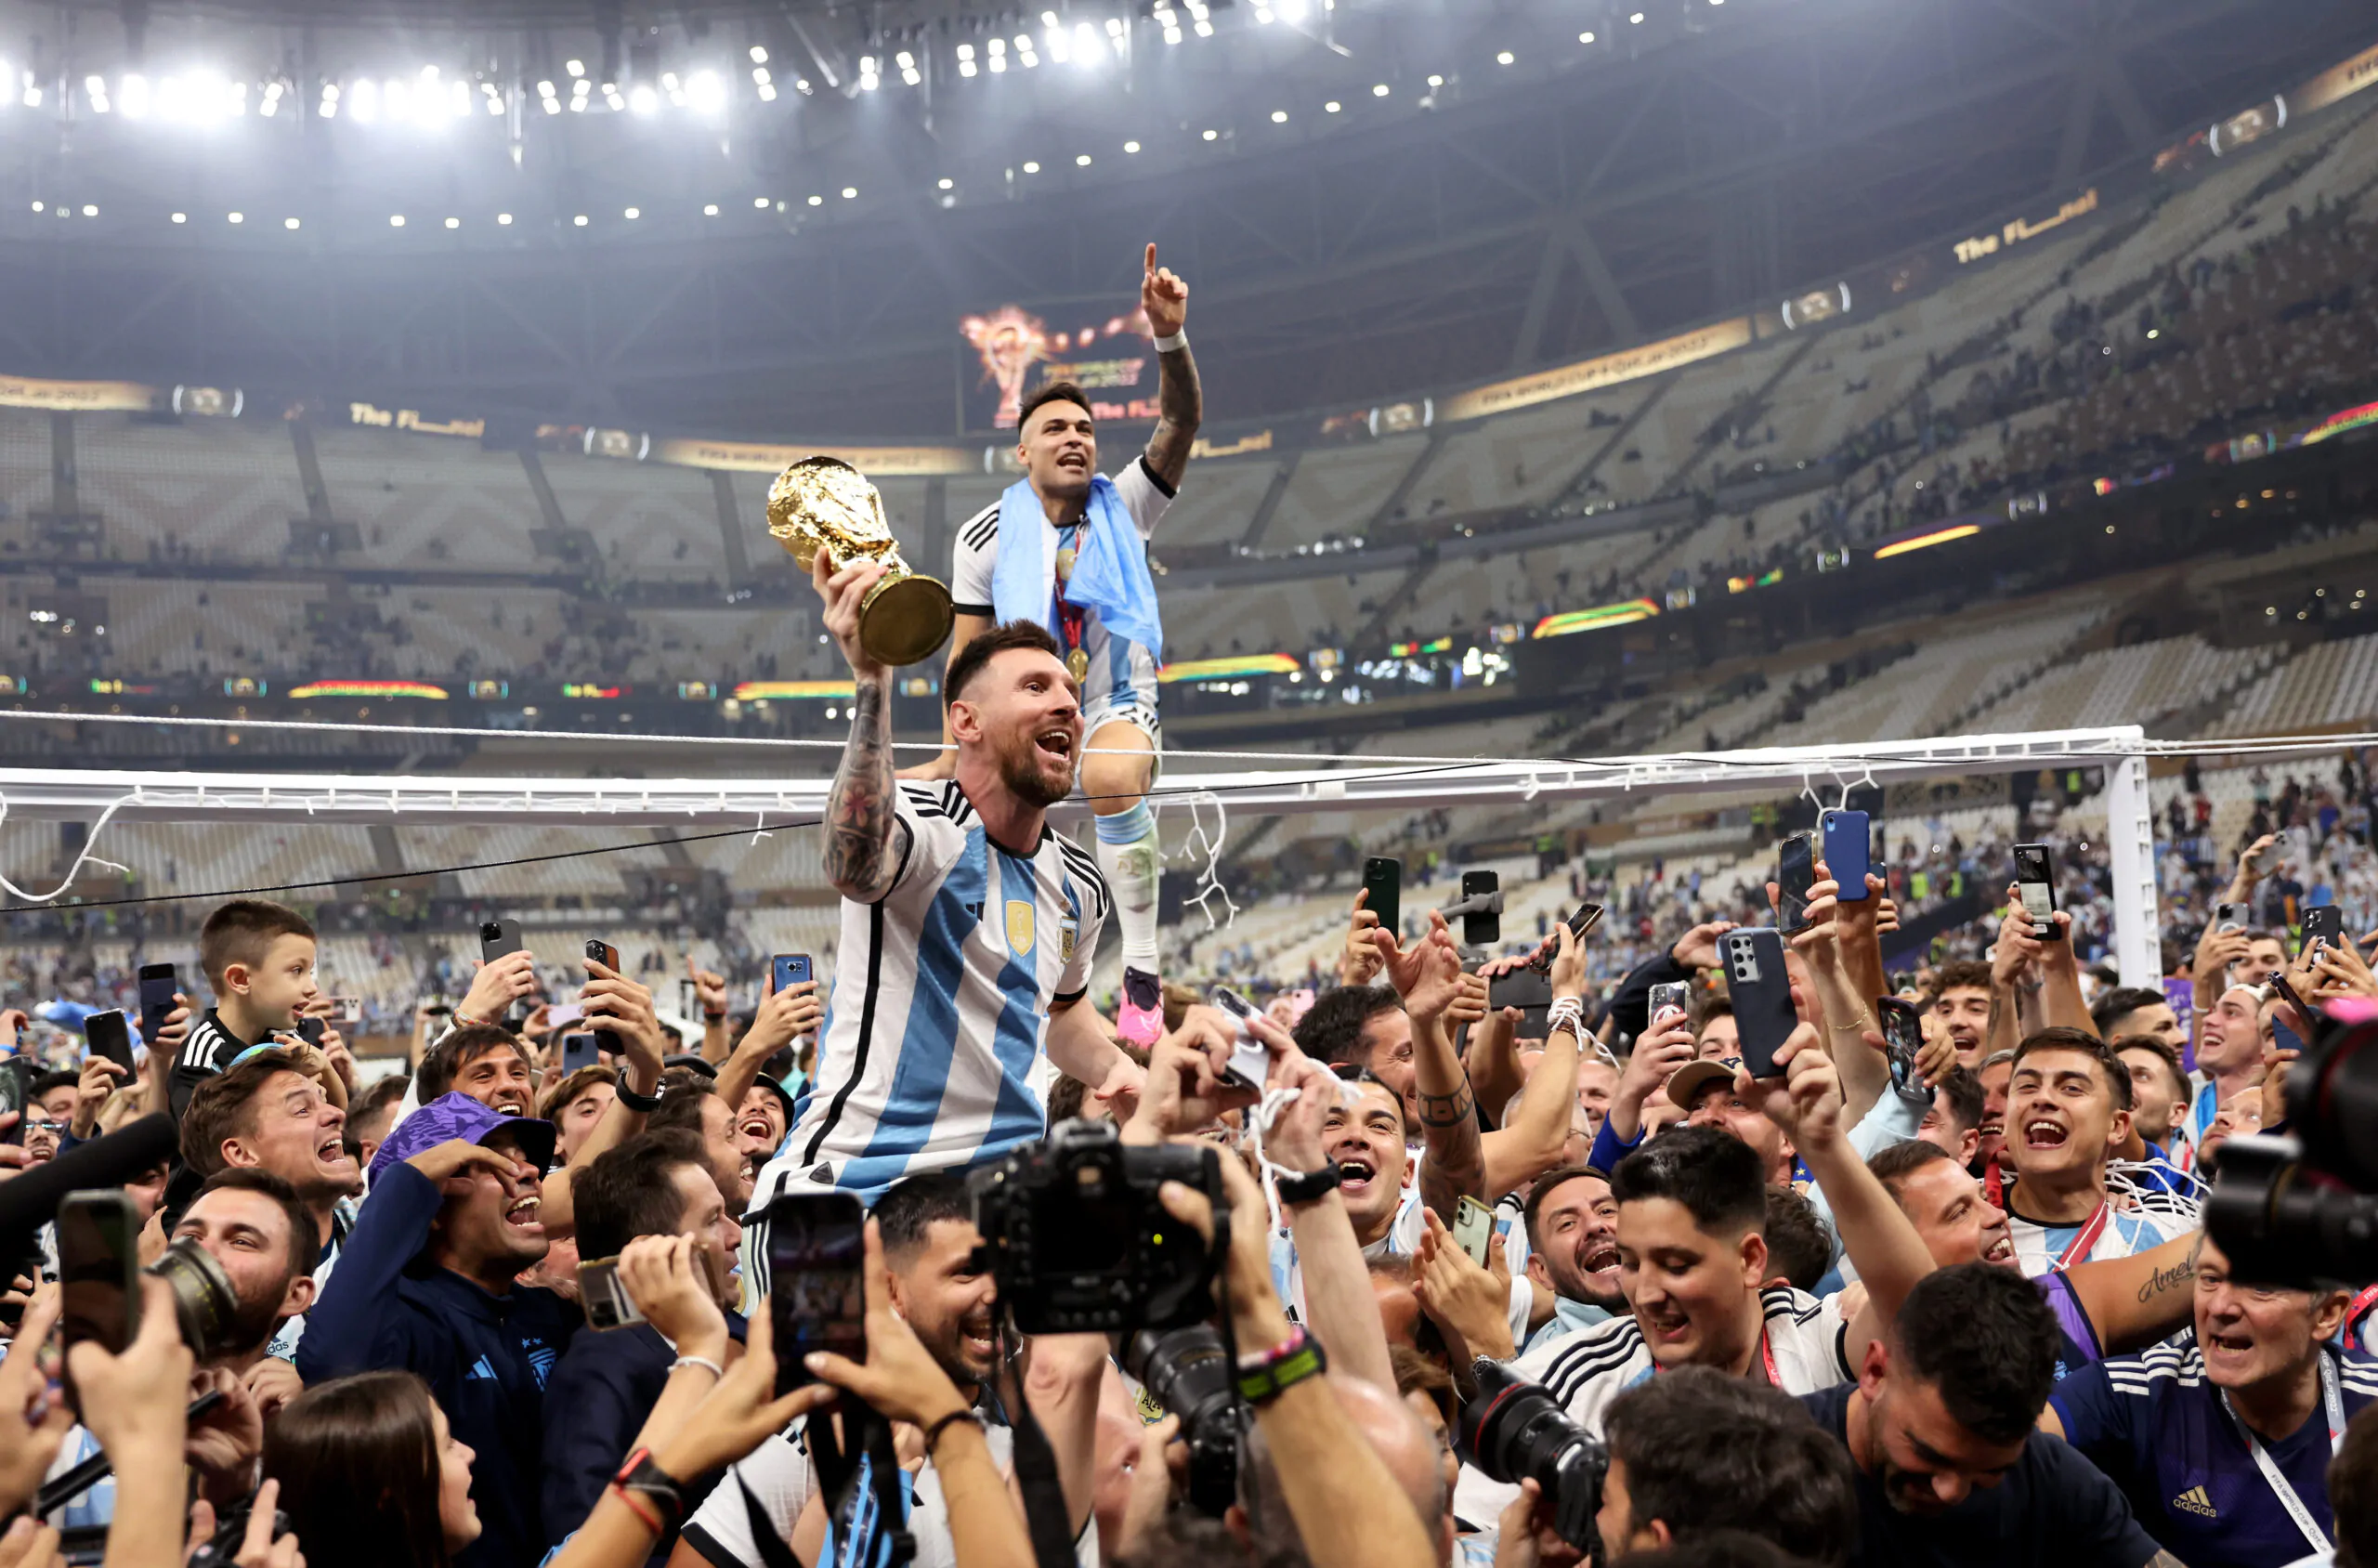 Argentina-Francia nella storia: record folle registrato su WhatsApp durante la finale